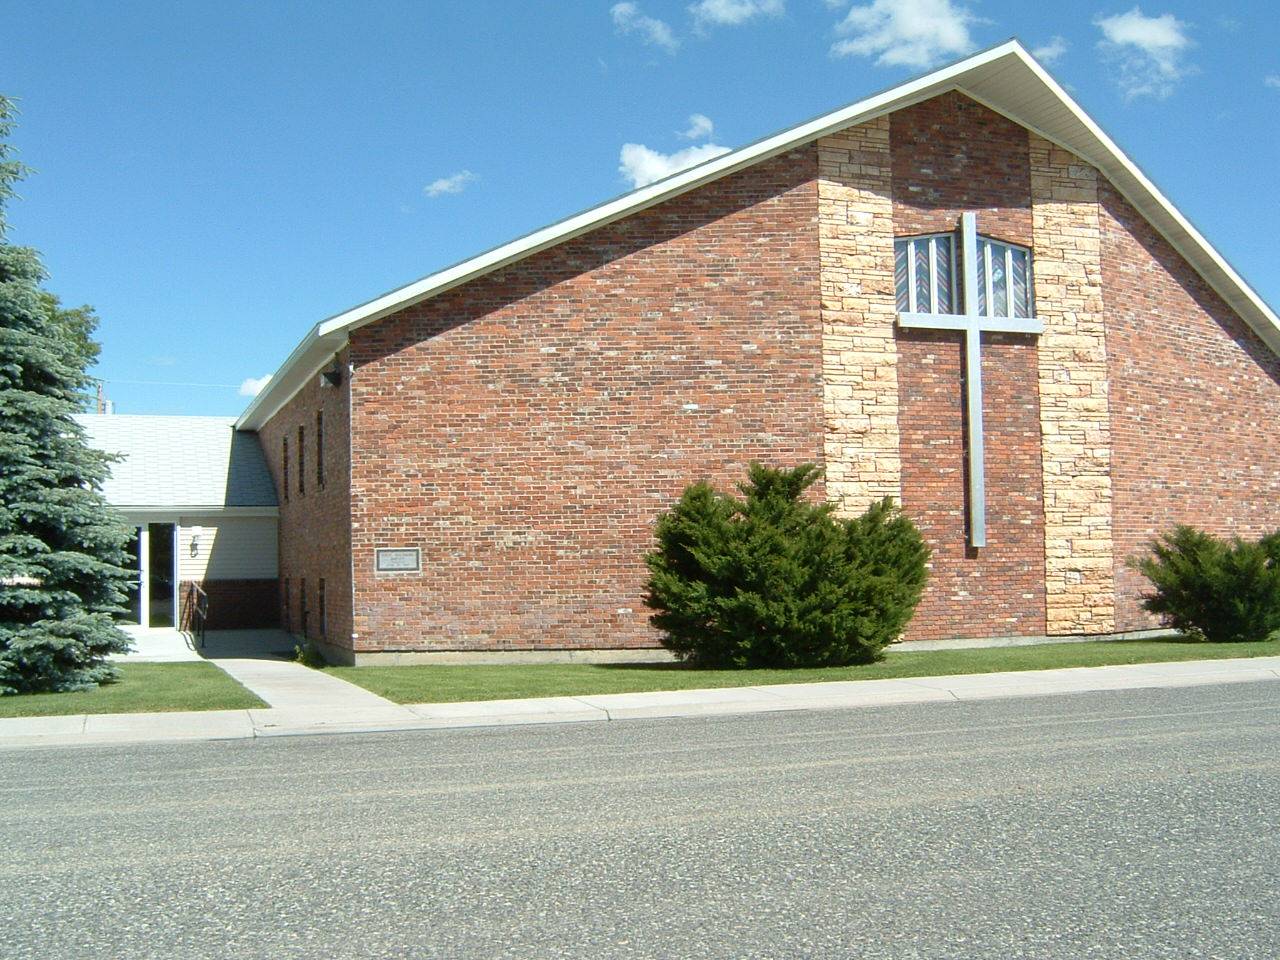 Description: Church Photo